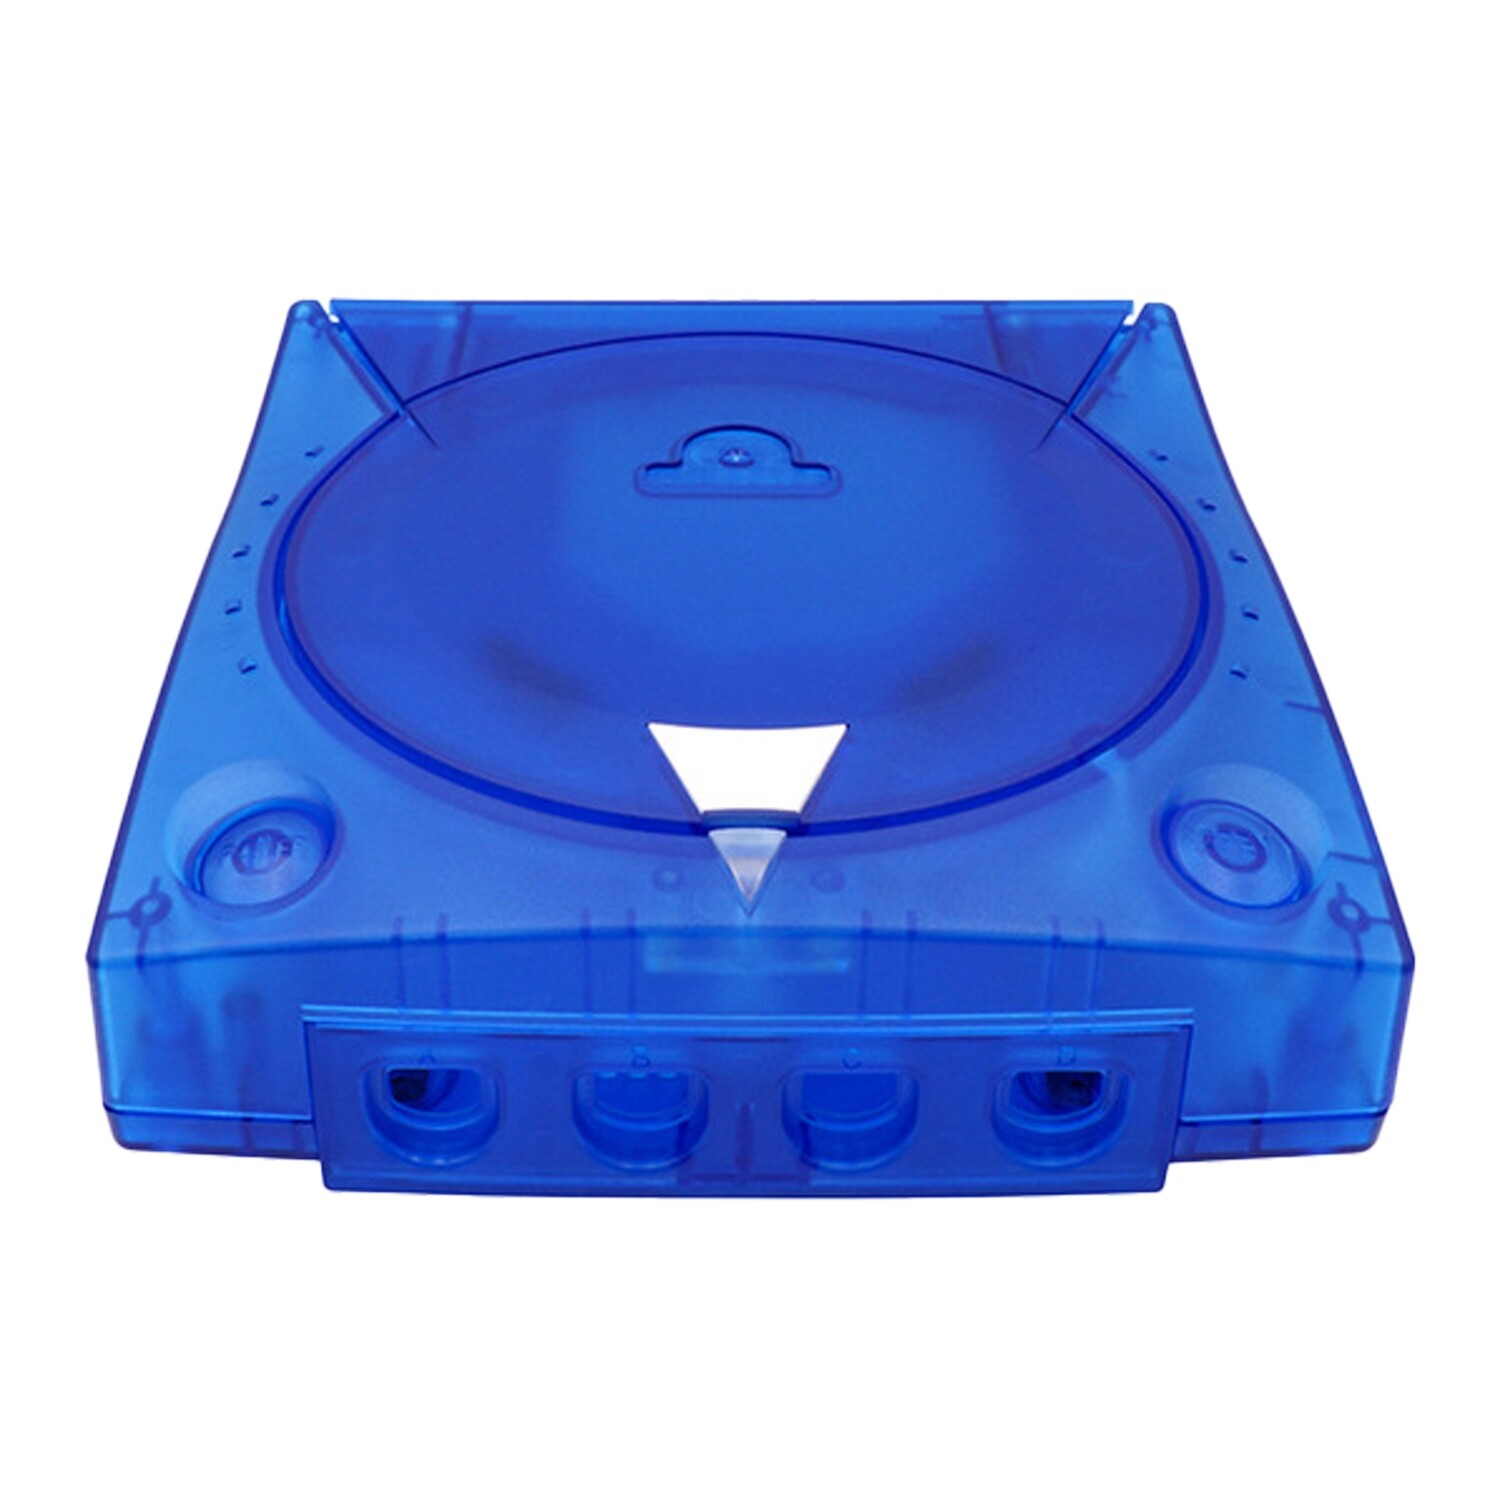 SEGA Dreamcast Replacement Shell, Colour: Blue